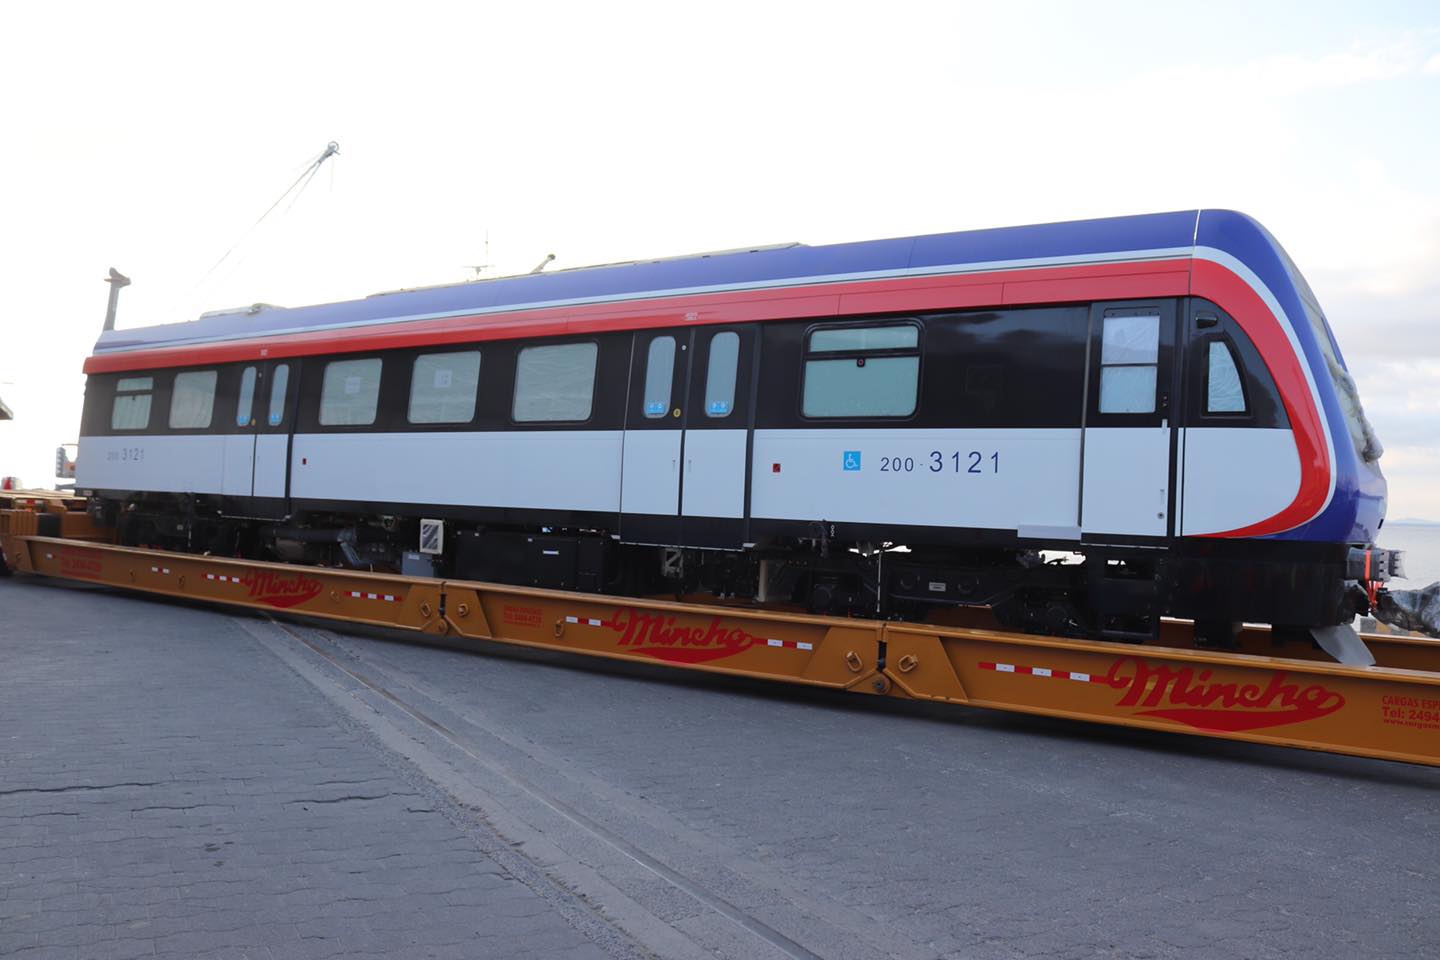 Tarifas del tren no aumentarían tras entrada en funcionamiento de nuevas unidades